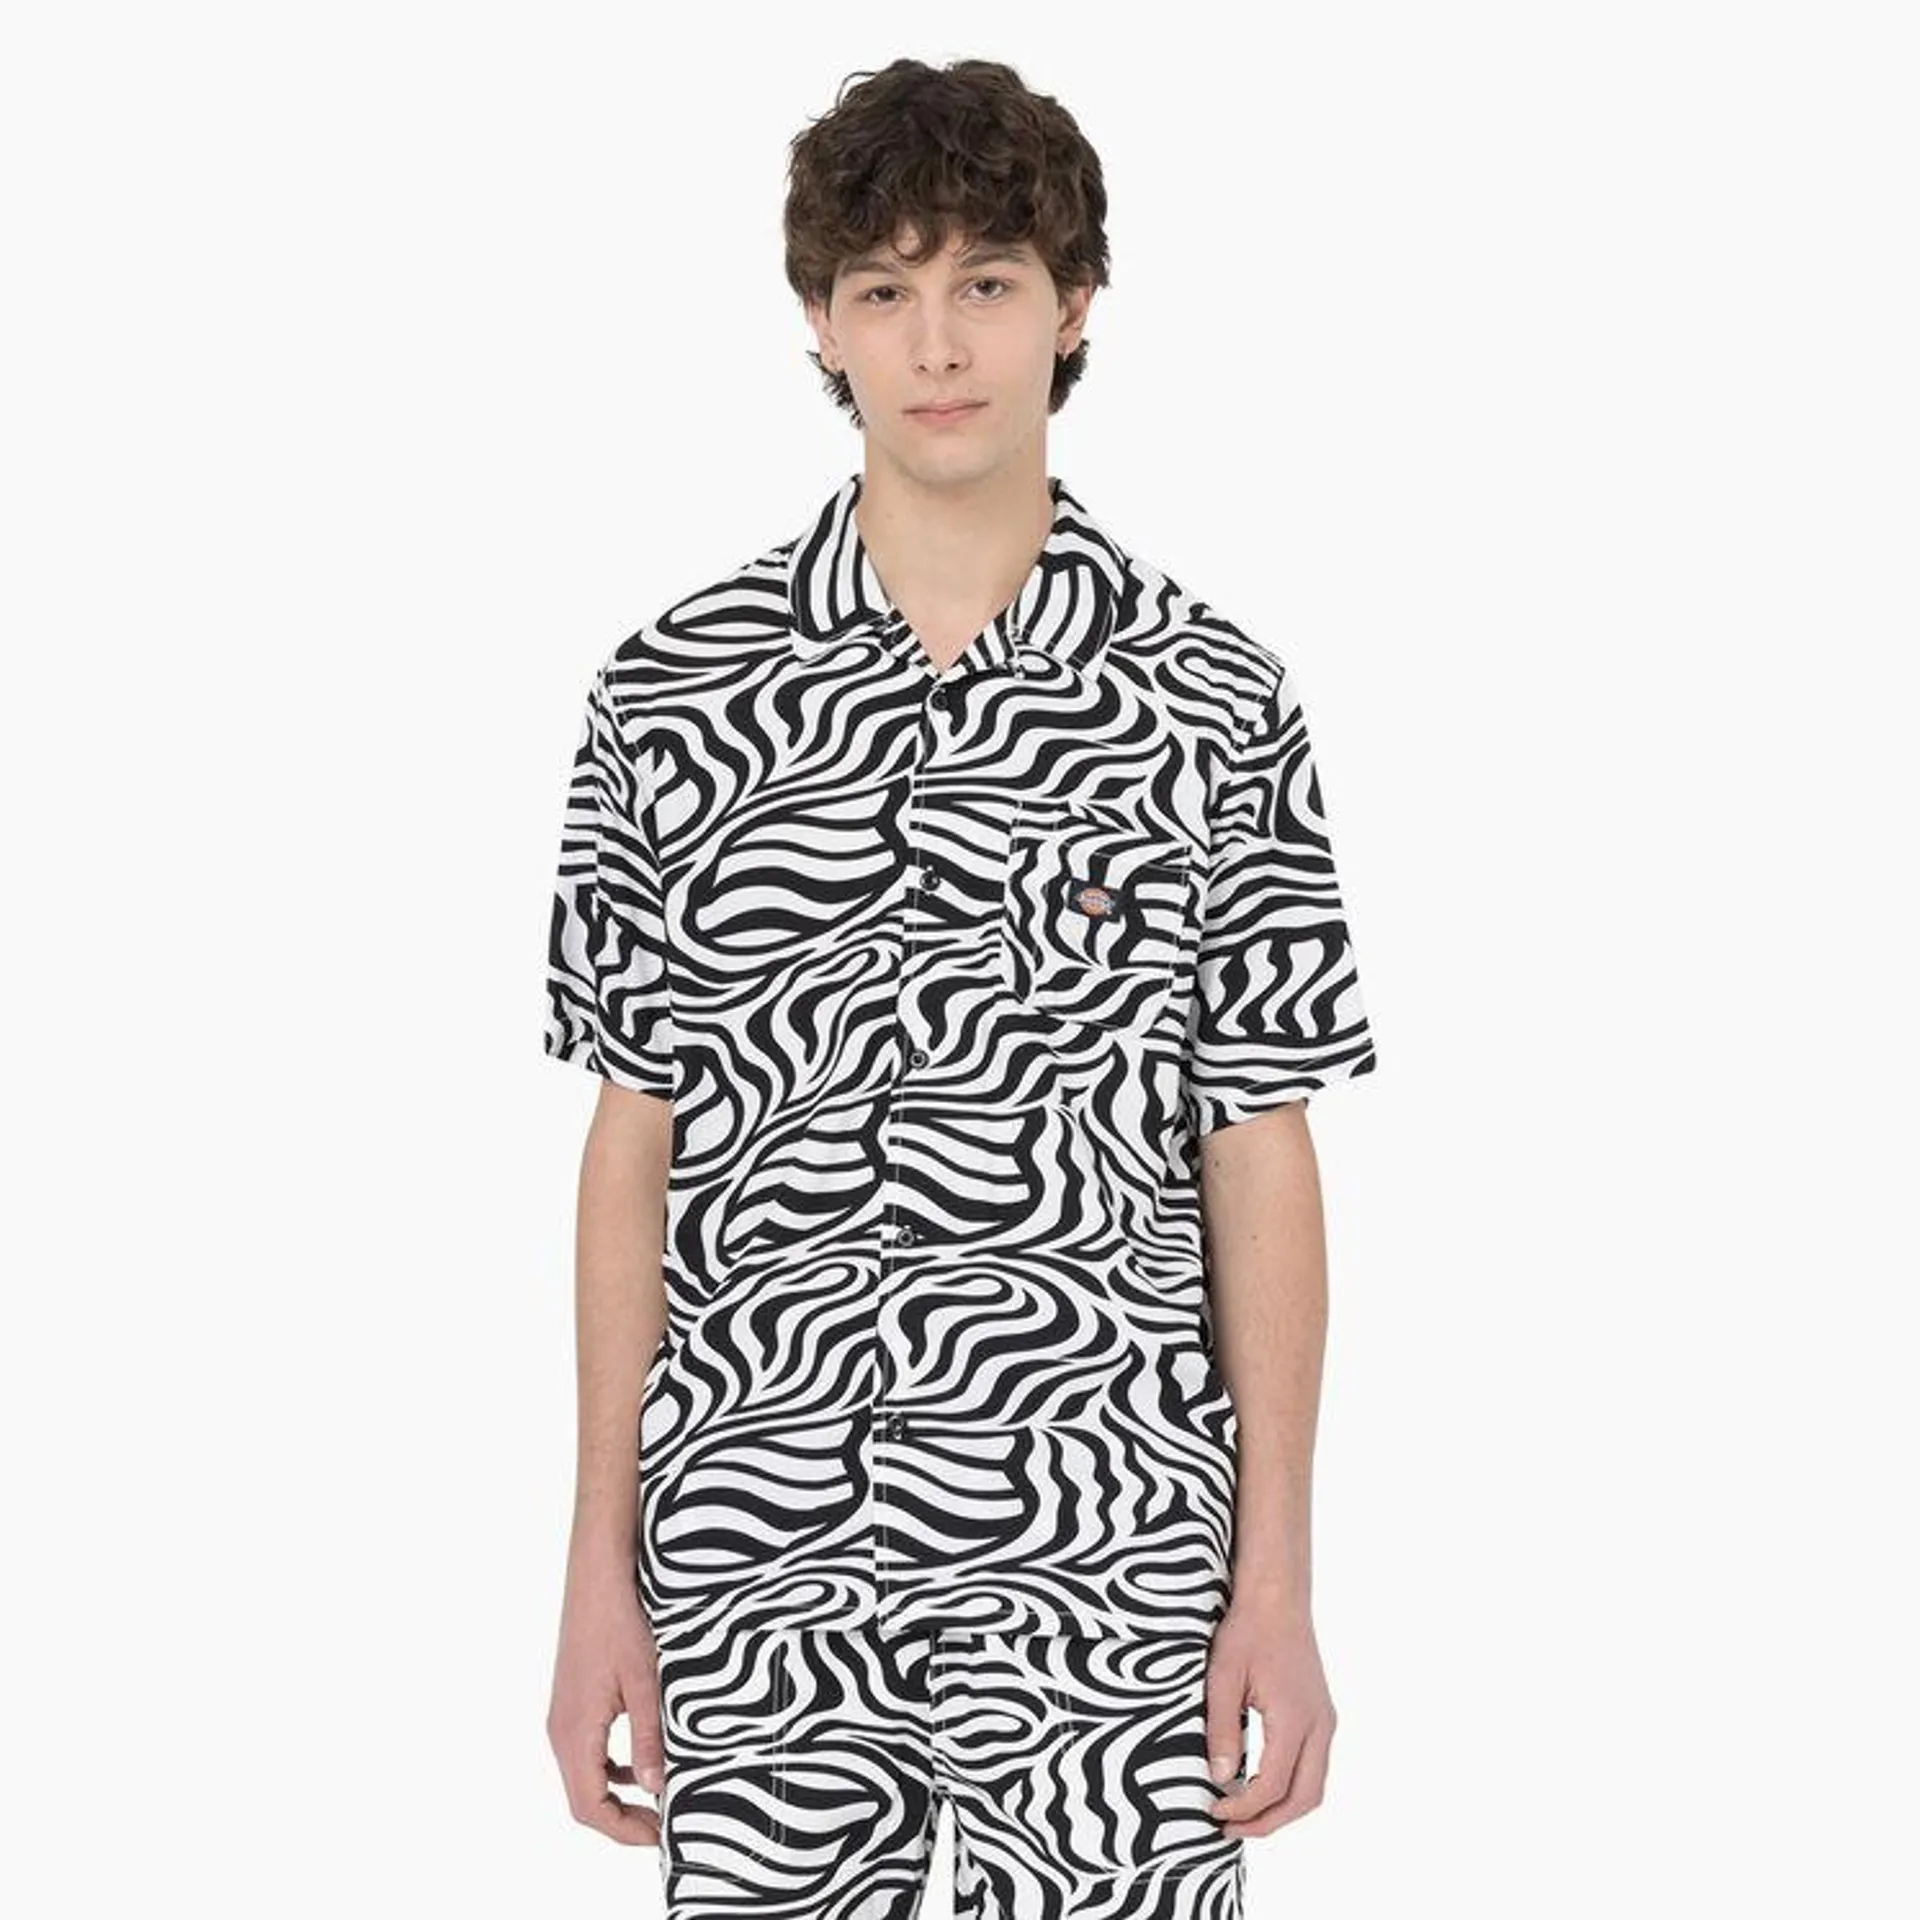 Zebra Print Button-Up Shirt, Black/White